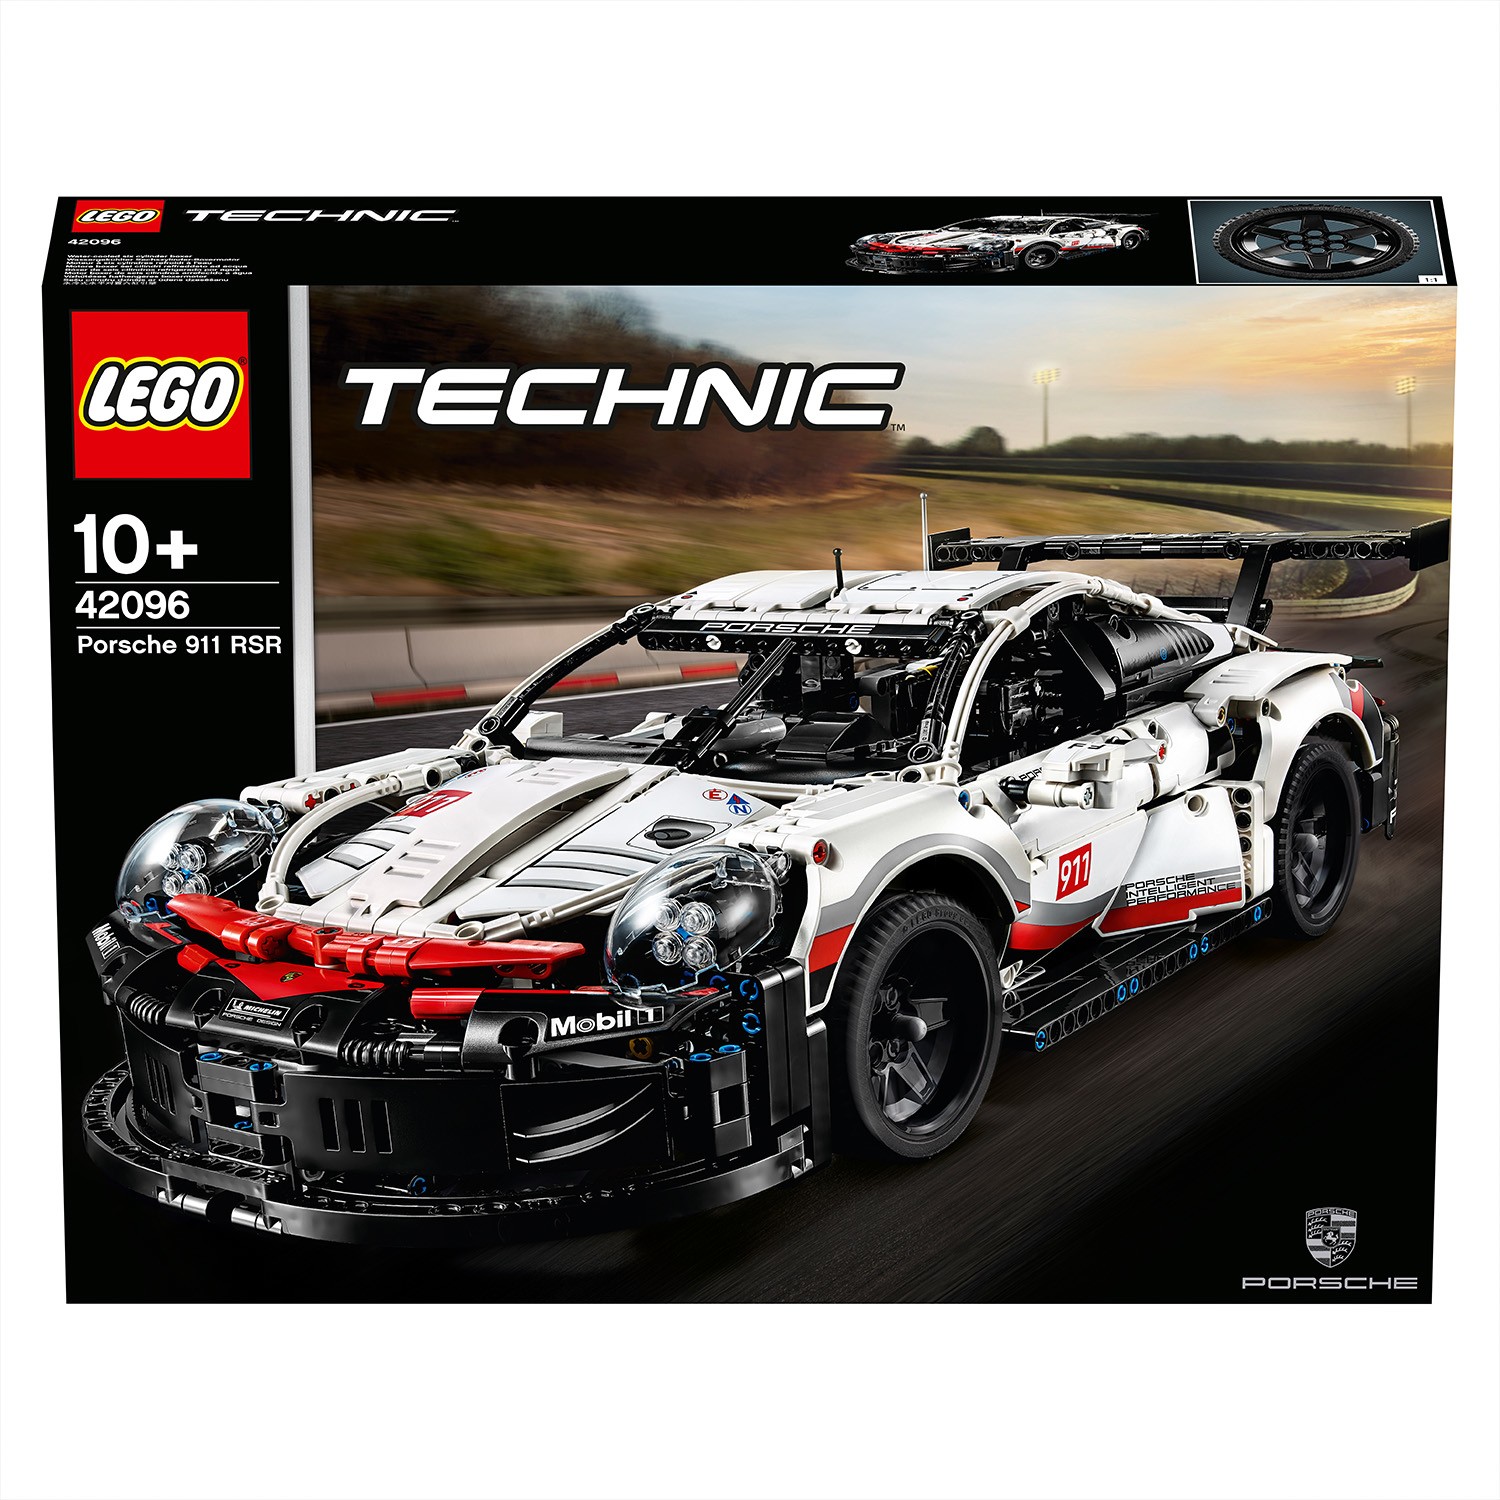 LEGO Technic Porsche 911 RSR 42096 - 42096